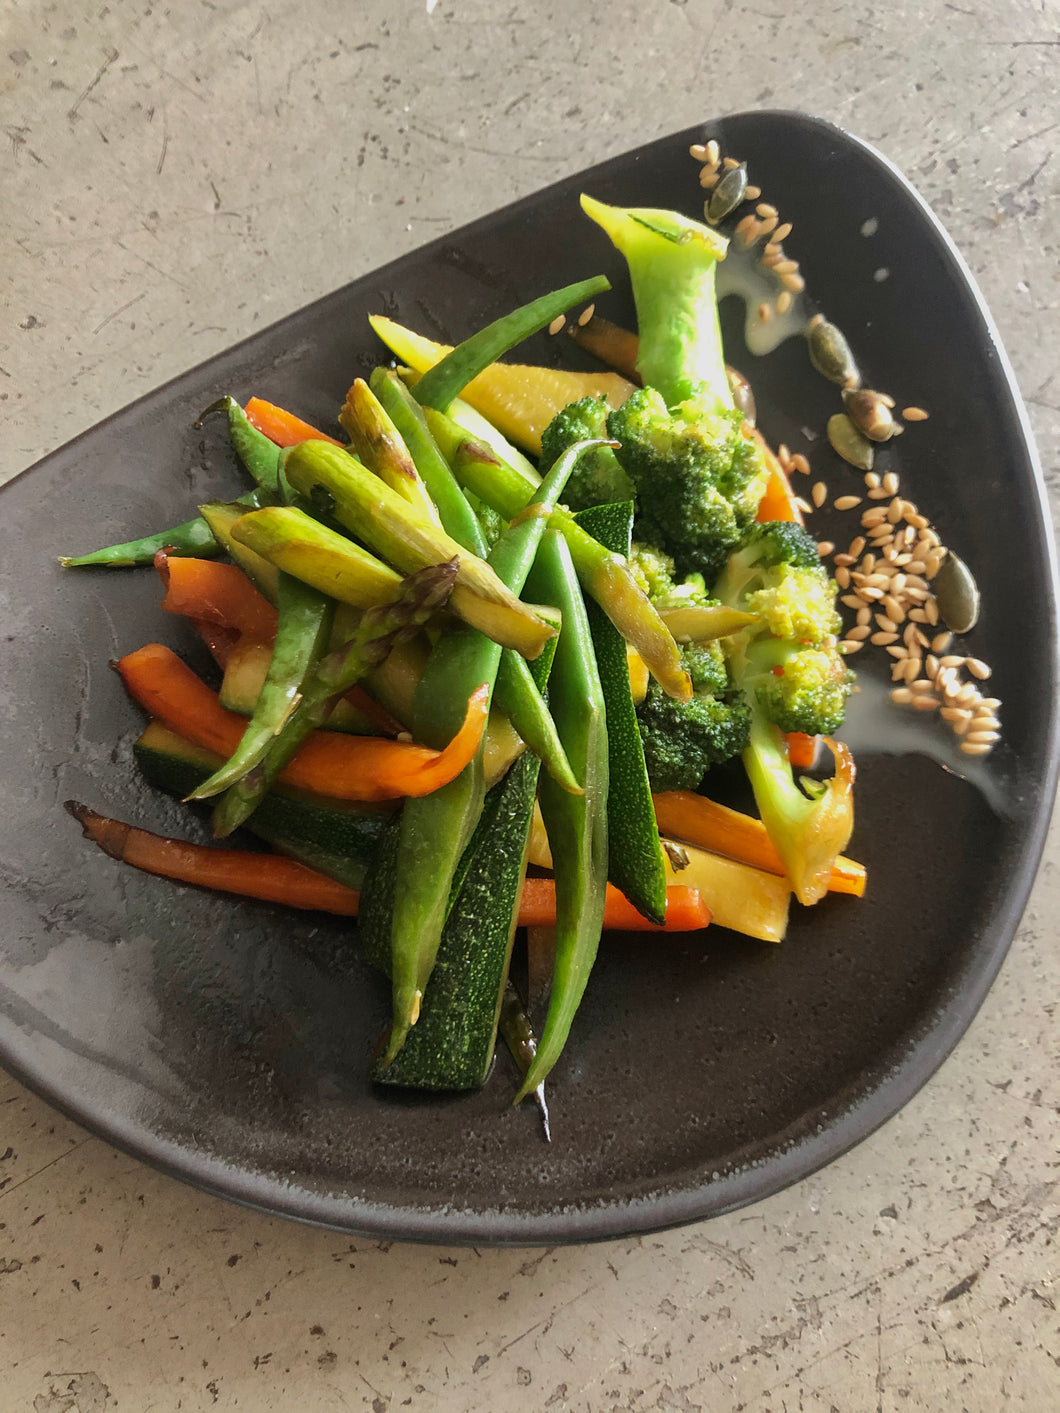 Verduras Teppaniaky - Teppaniaky Vegetables (vegan)